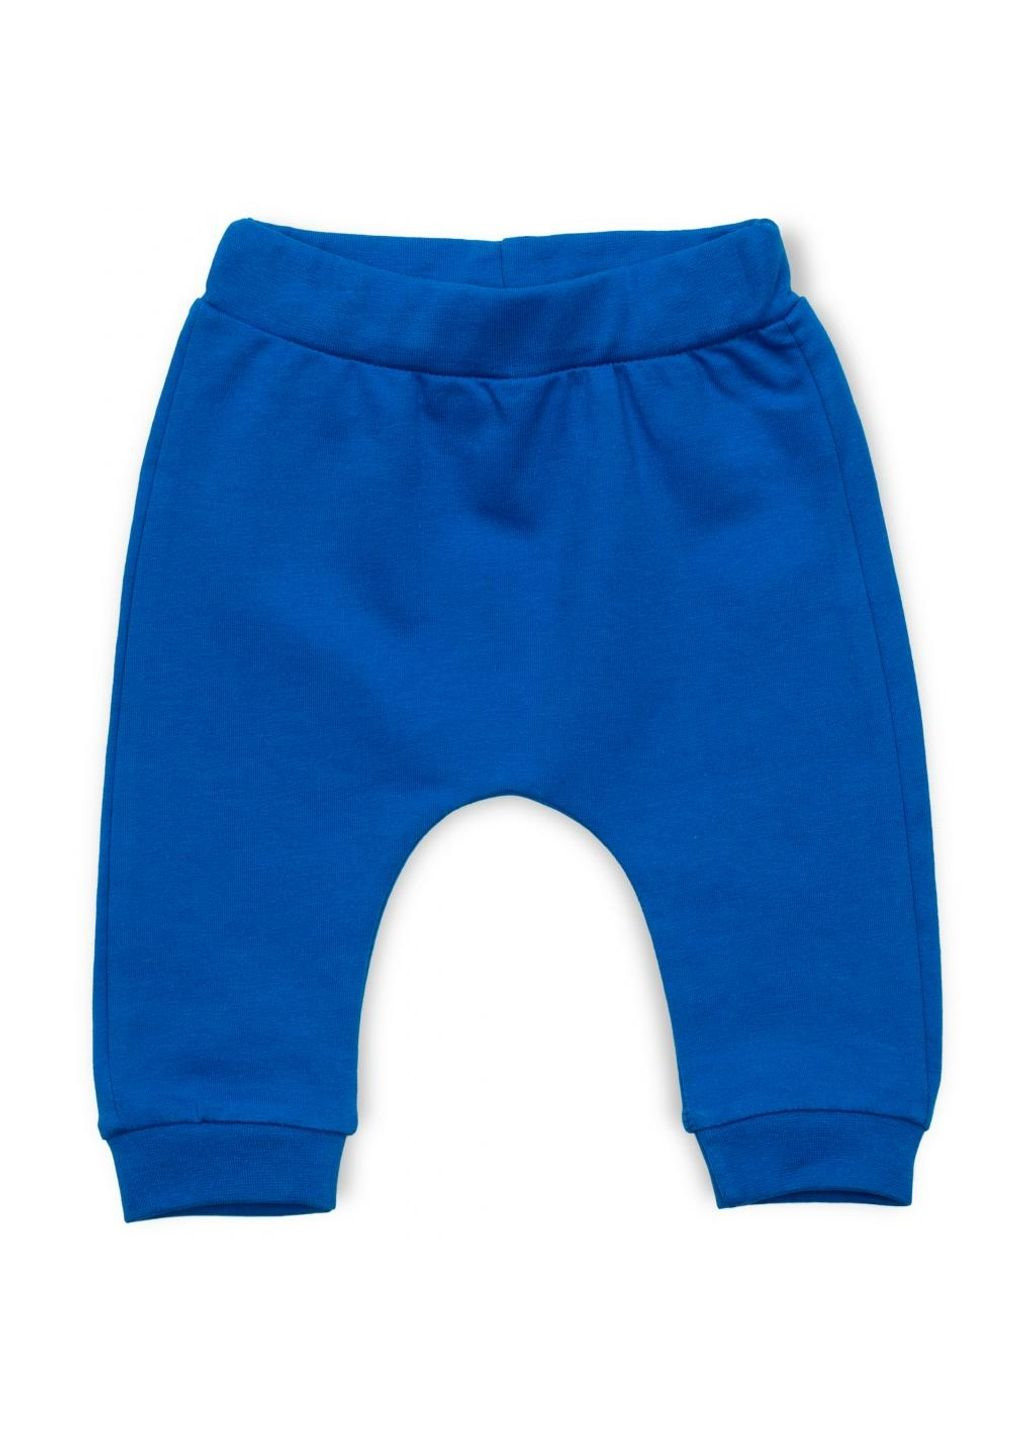 Светло-серый демисезонный набор детской одежды с жилетом (2824-74b-blue) Tongs